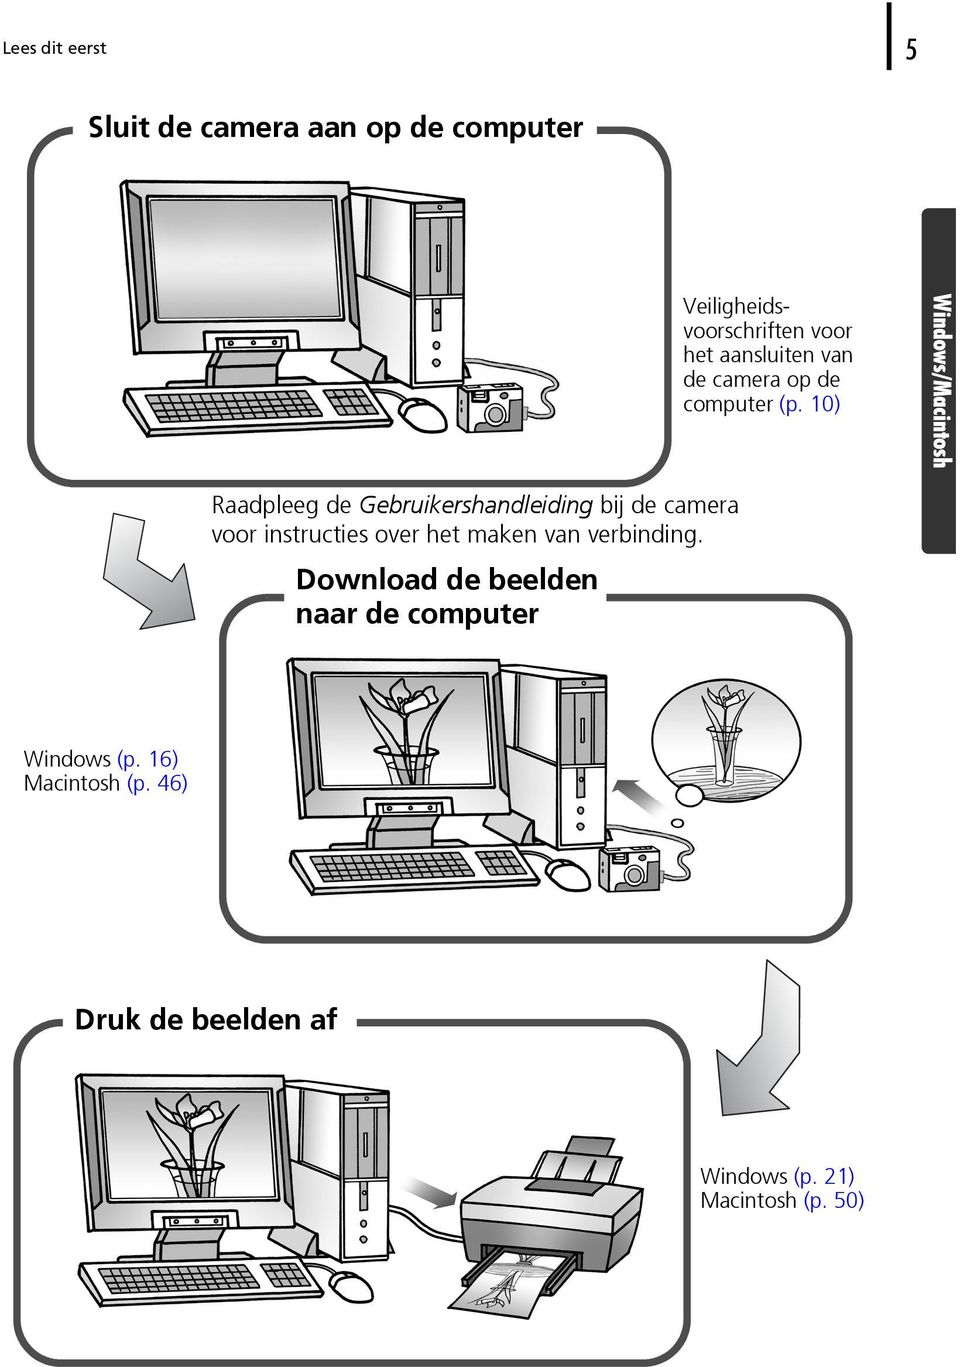 10) Windows/Macintosh Raadpleeg de Gebruikershandleiding bij de camera voor instructies over